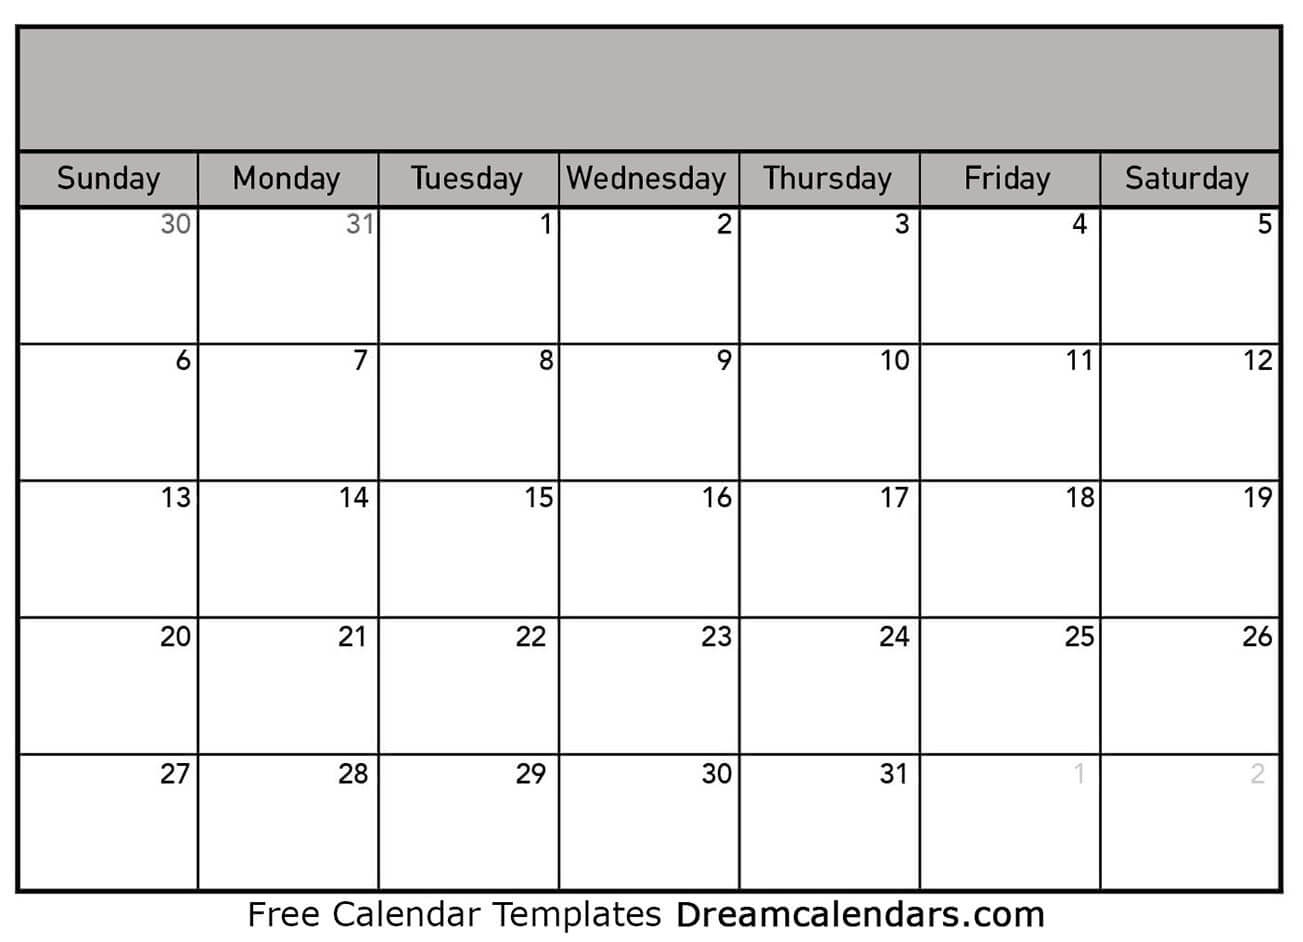 Printable Blank Calendar 2020 | Dream Calendars Exceptional Blank Outlook Calendar 2020 With Week Numbers